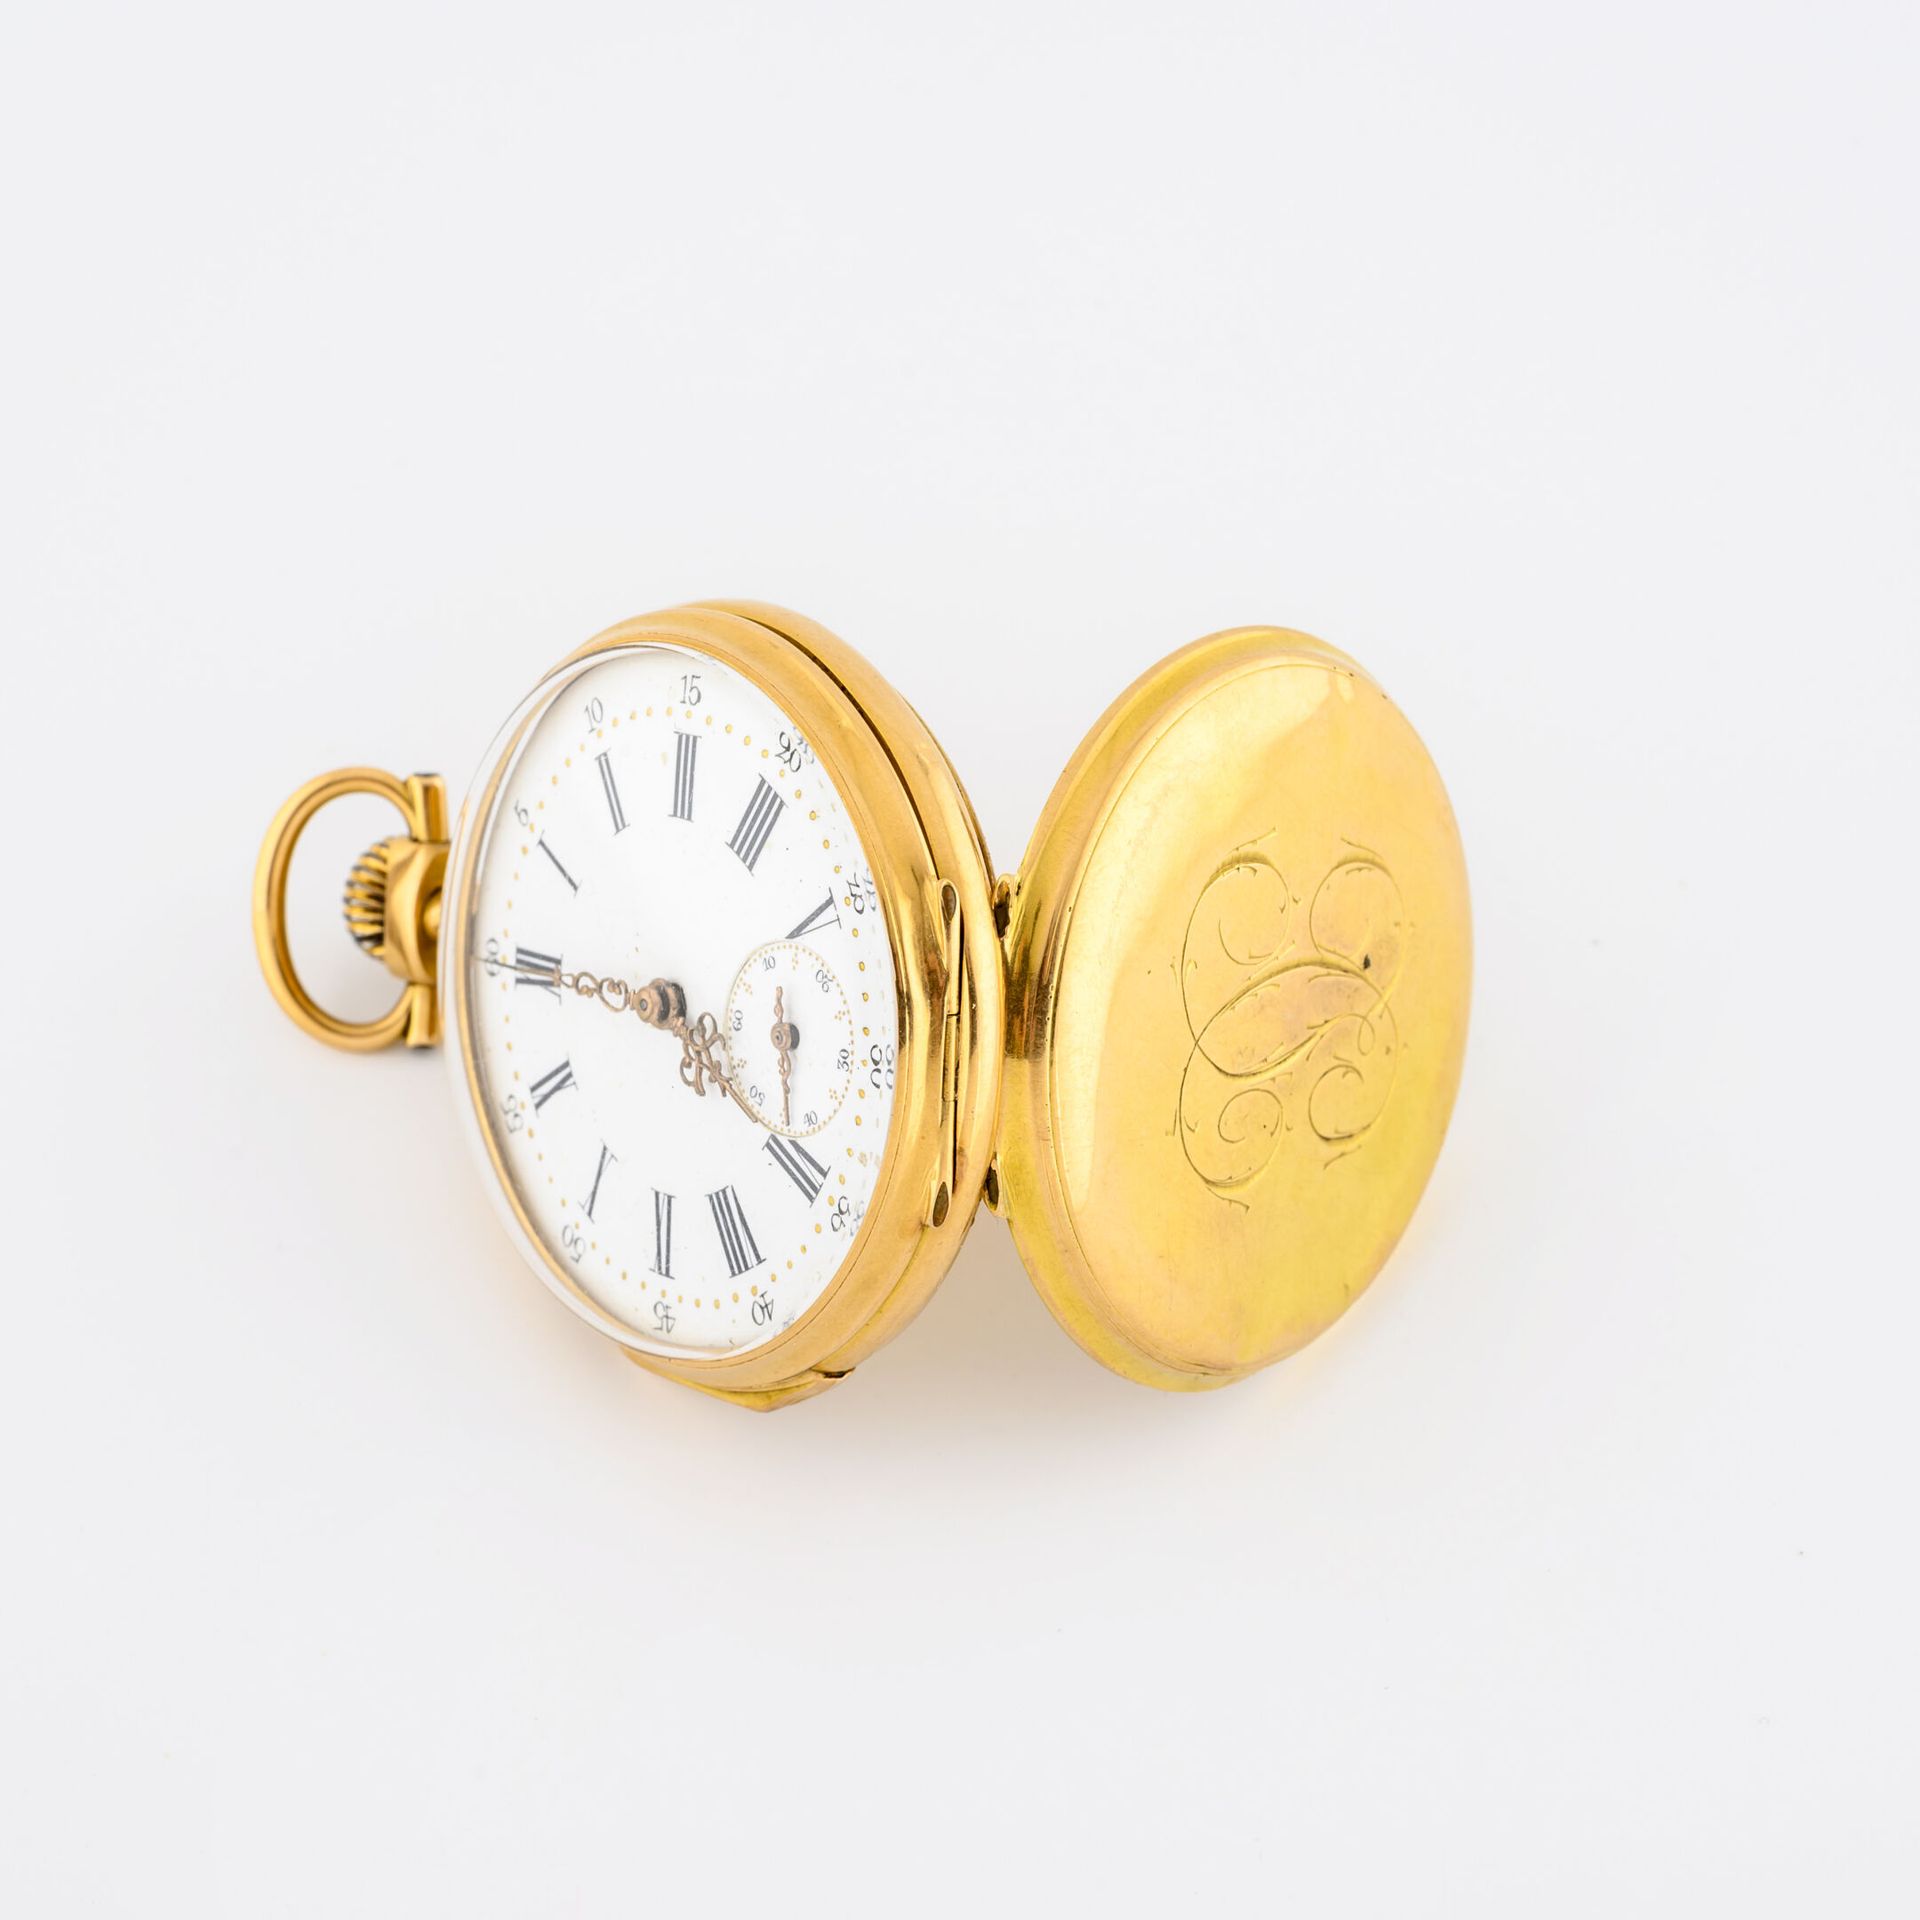 Null 黄金（750）怀表。

数字化的封底。

白色珐琅表盘，罗马数字时标，金色圆点代表分钟。

秒针位于6点钟方向。

手动上链机械机芯，宝玑平衡弹簧。
&hellip;